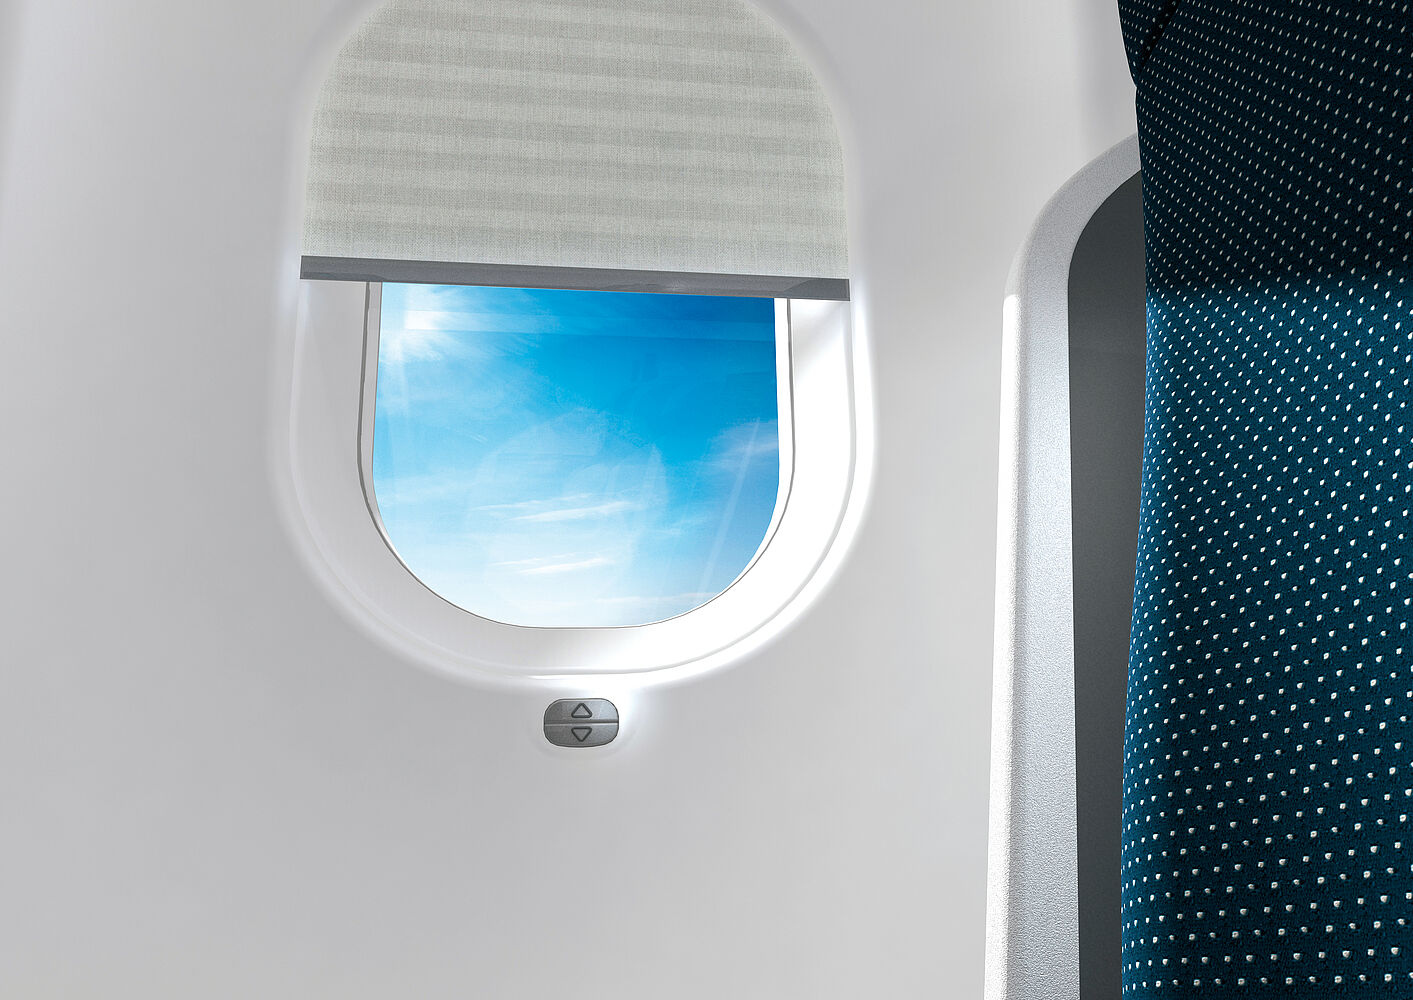 Brushless motor for Aviation cabin equipment window blinds